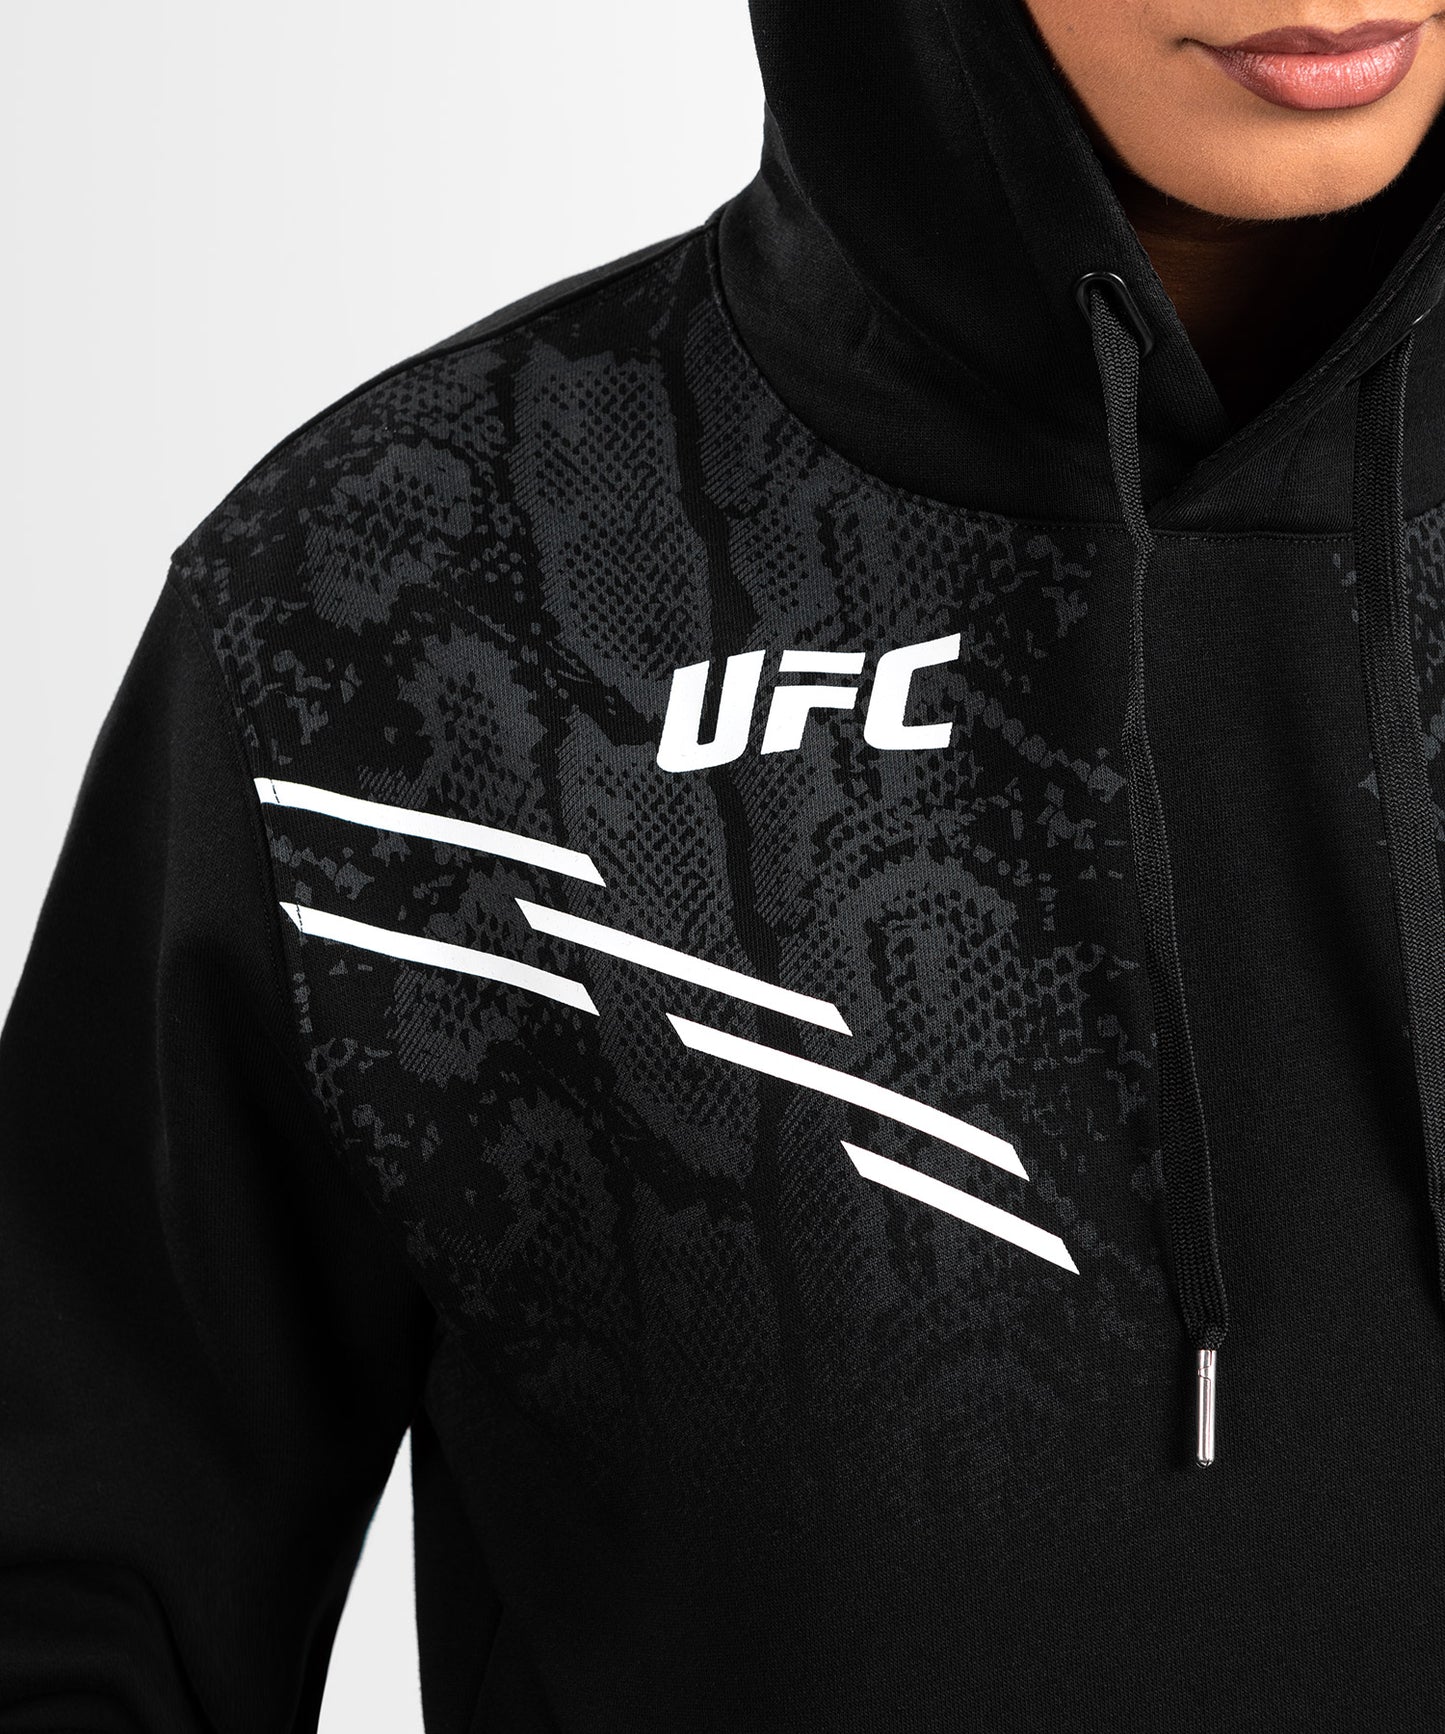 Sweatshirt à Capuche pour Femmes UFC Adrenaline by Venum Replica - Noir